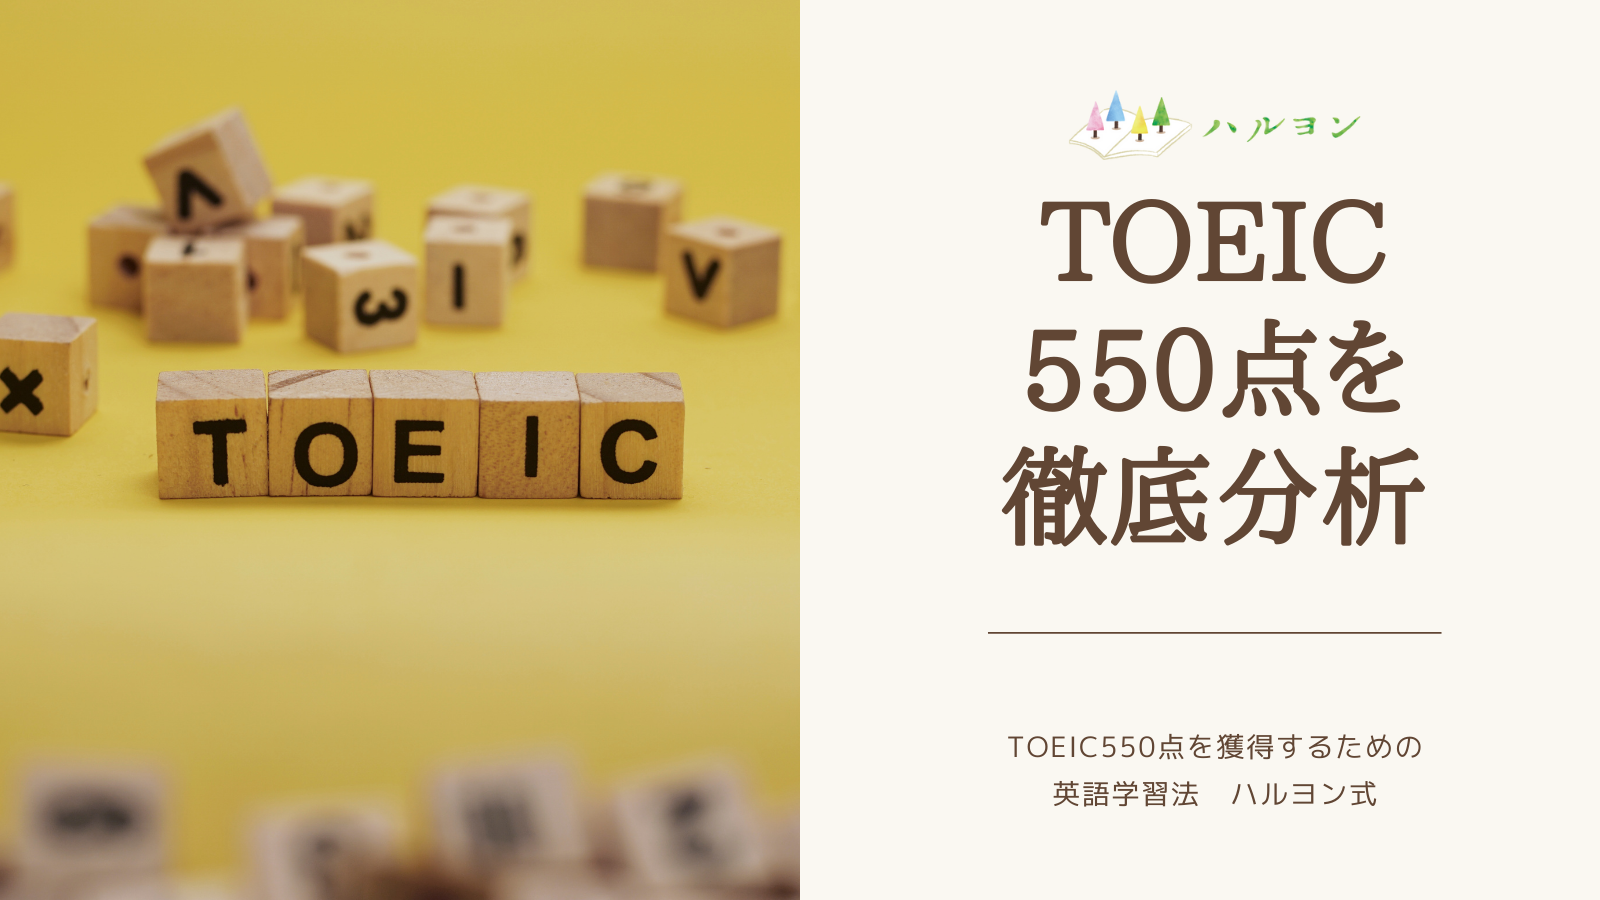 Toeic 550点レベルを徹底分析 Toeic550点を獲得するための英語学習法 ハルヨン式 ハルヨン